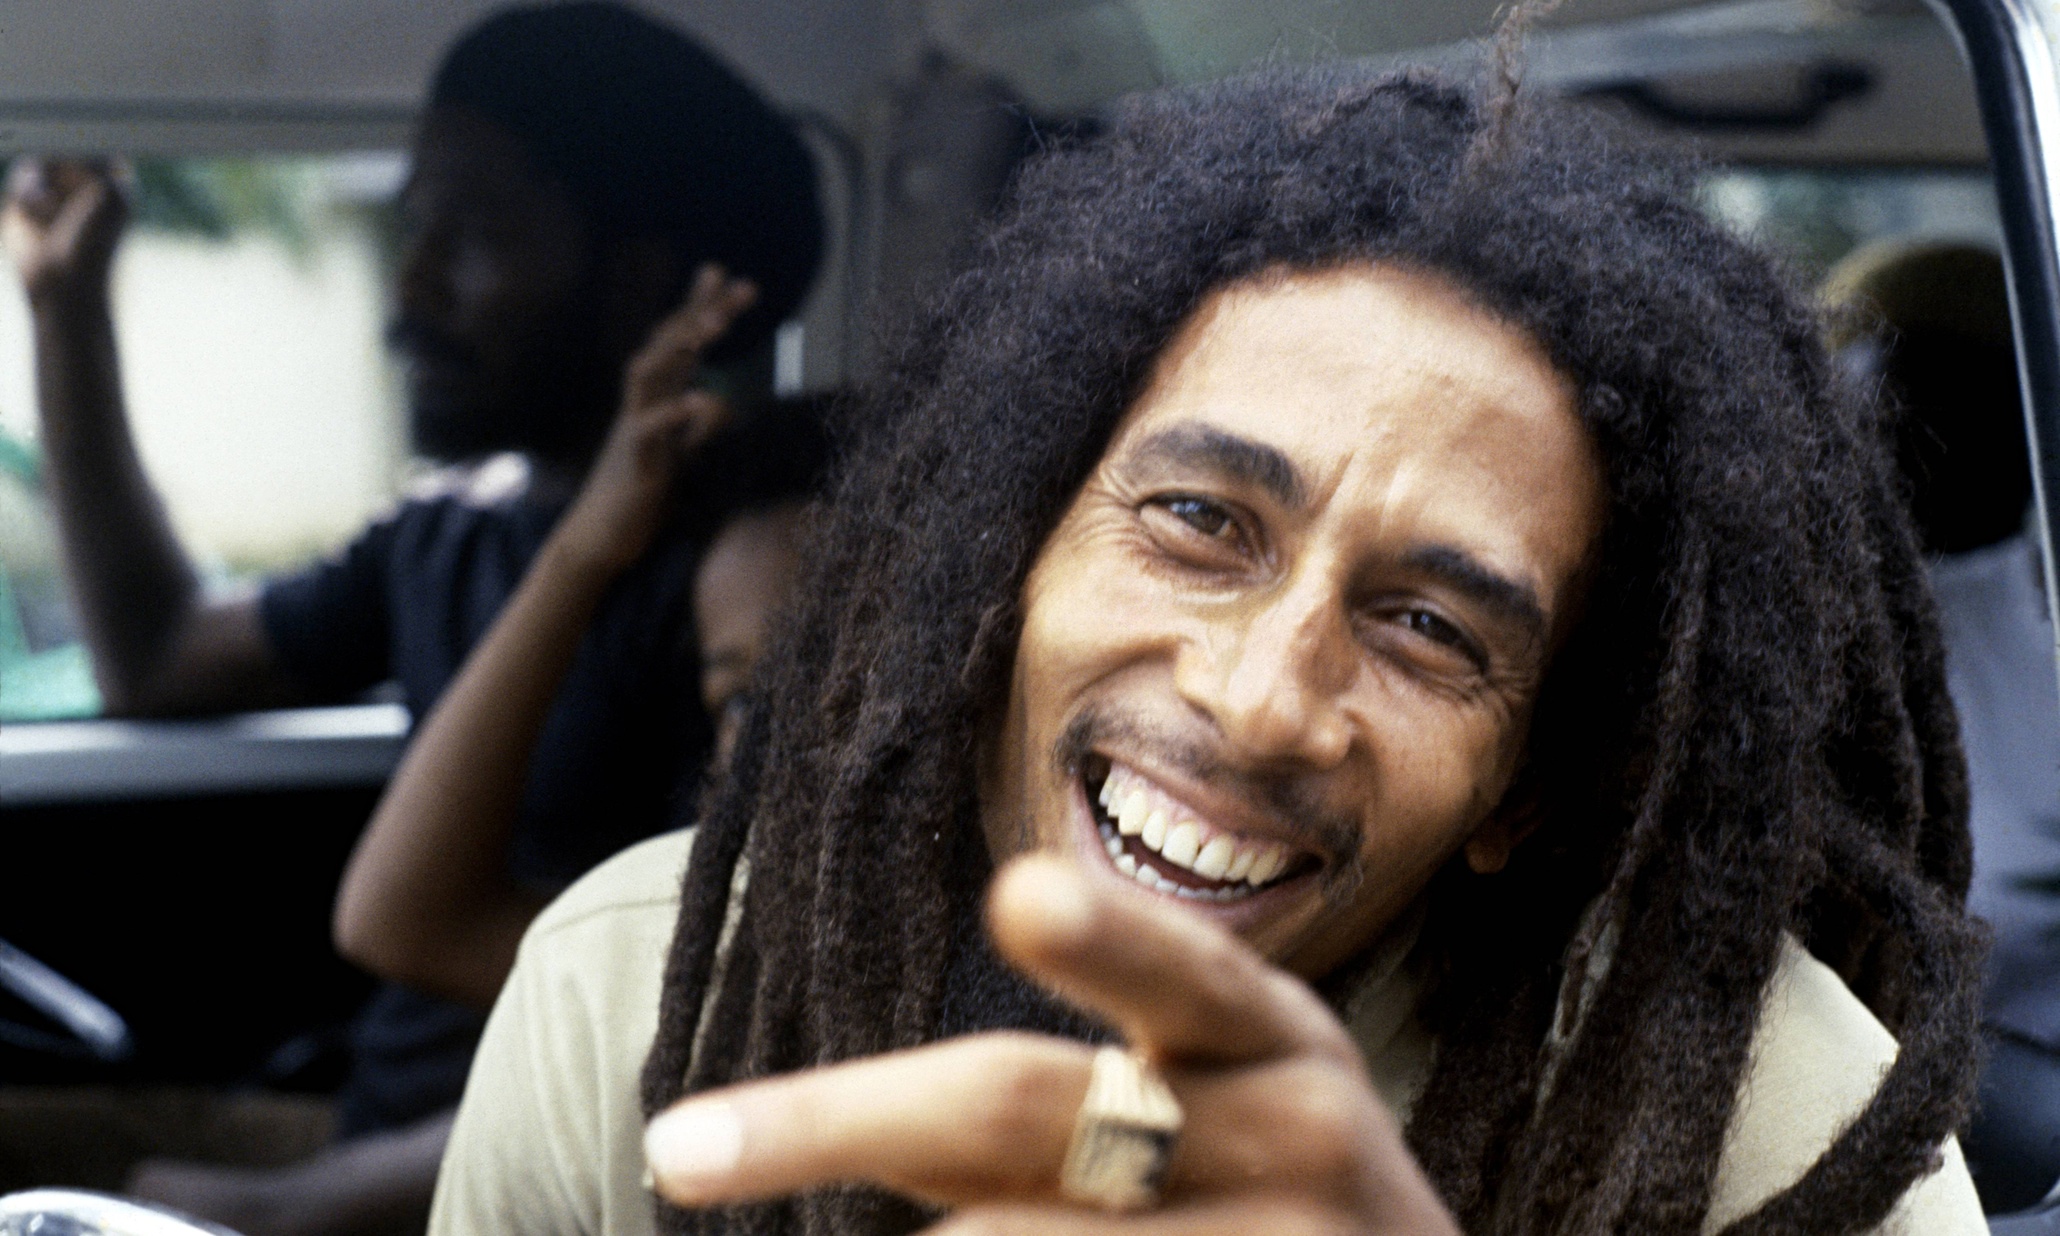 Restauran grabaciones de Bob Marley de hace 40 años. Cusica plus